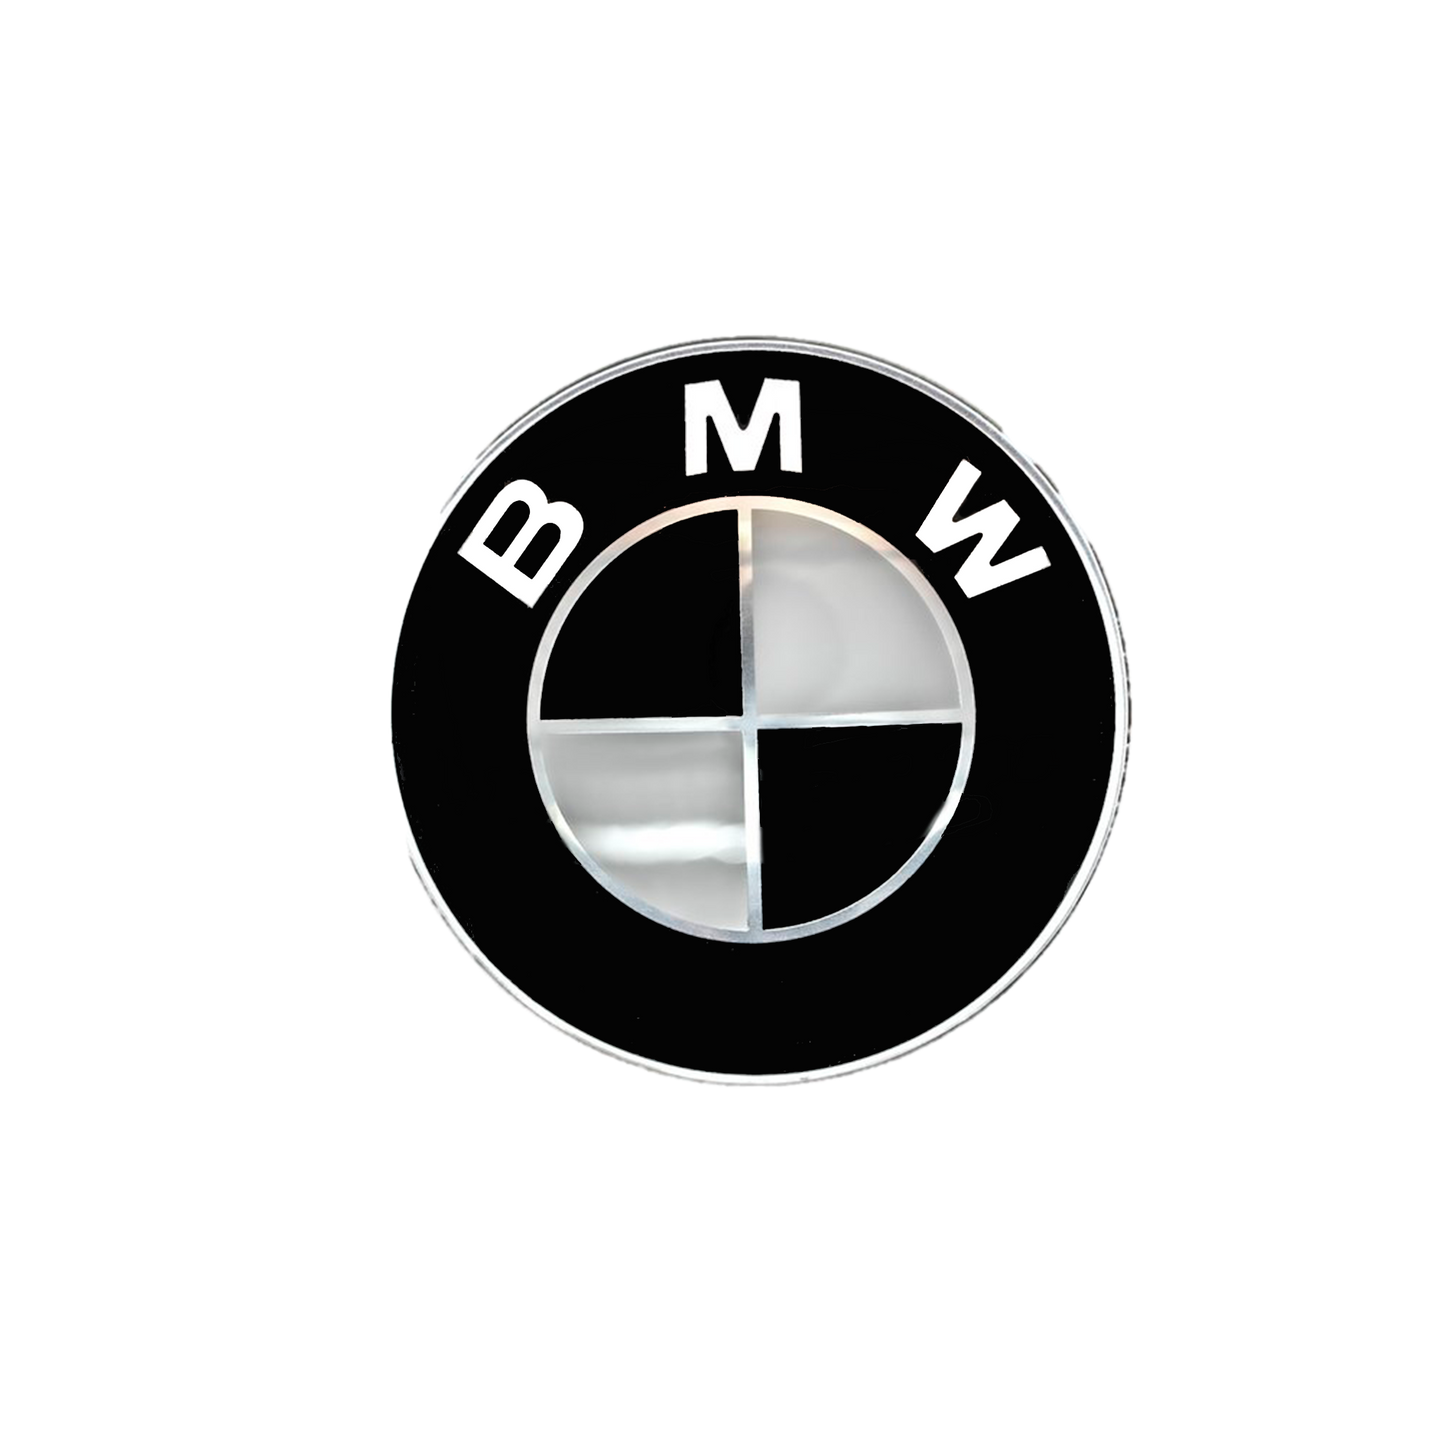 BMW Rear logo Black &amp; White 74mm 